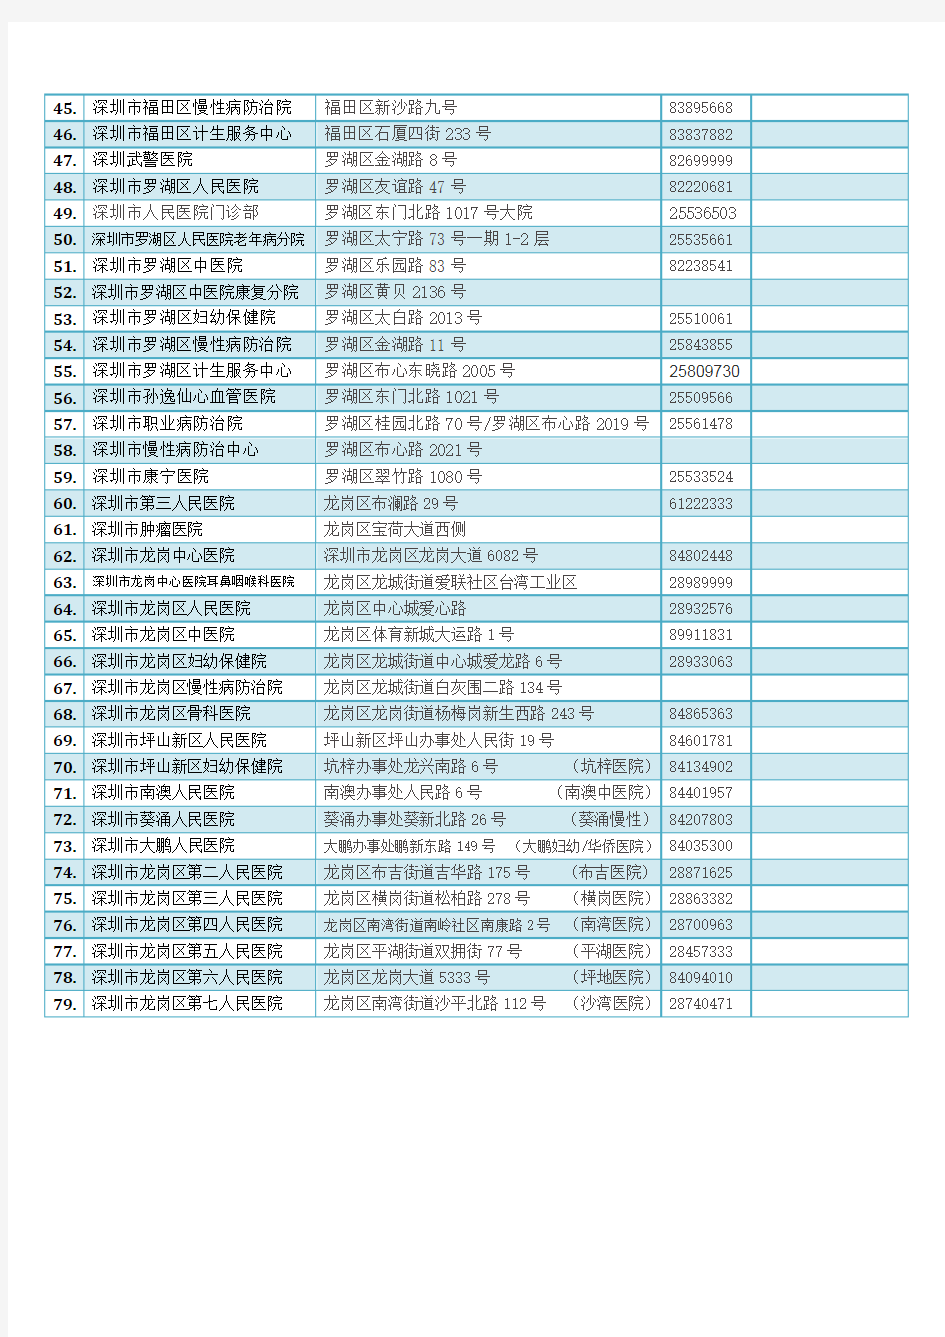 深圳公立医院名单(整理)